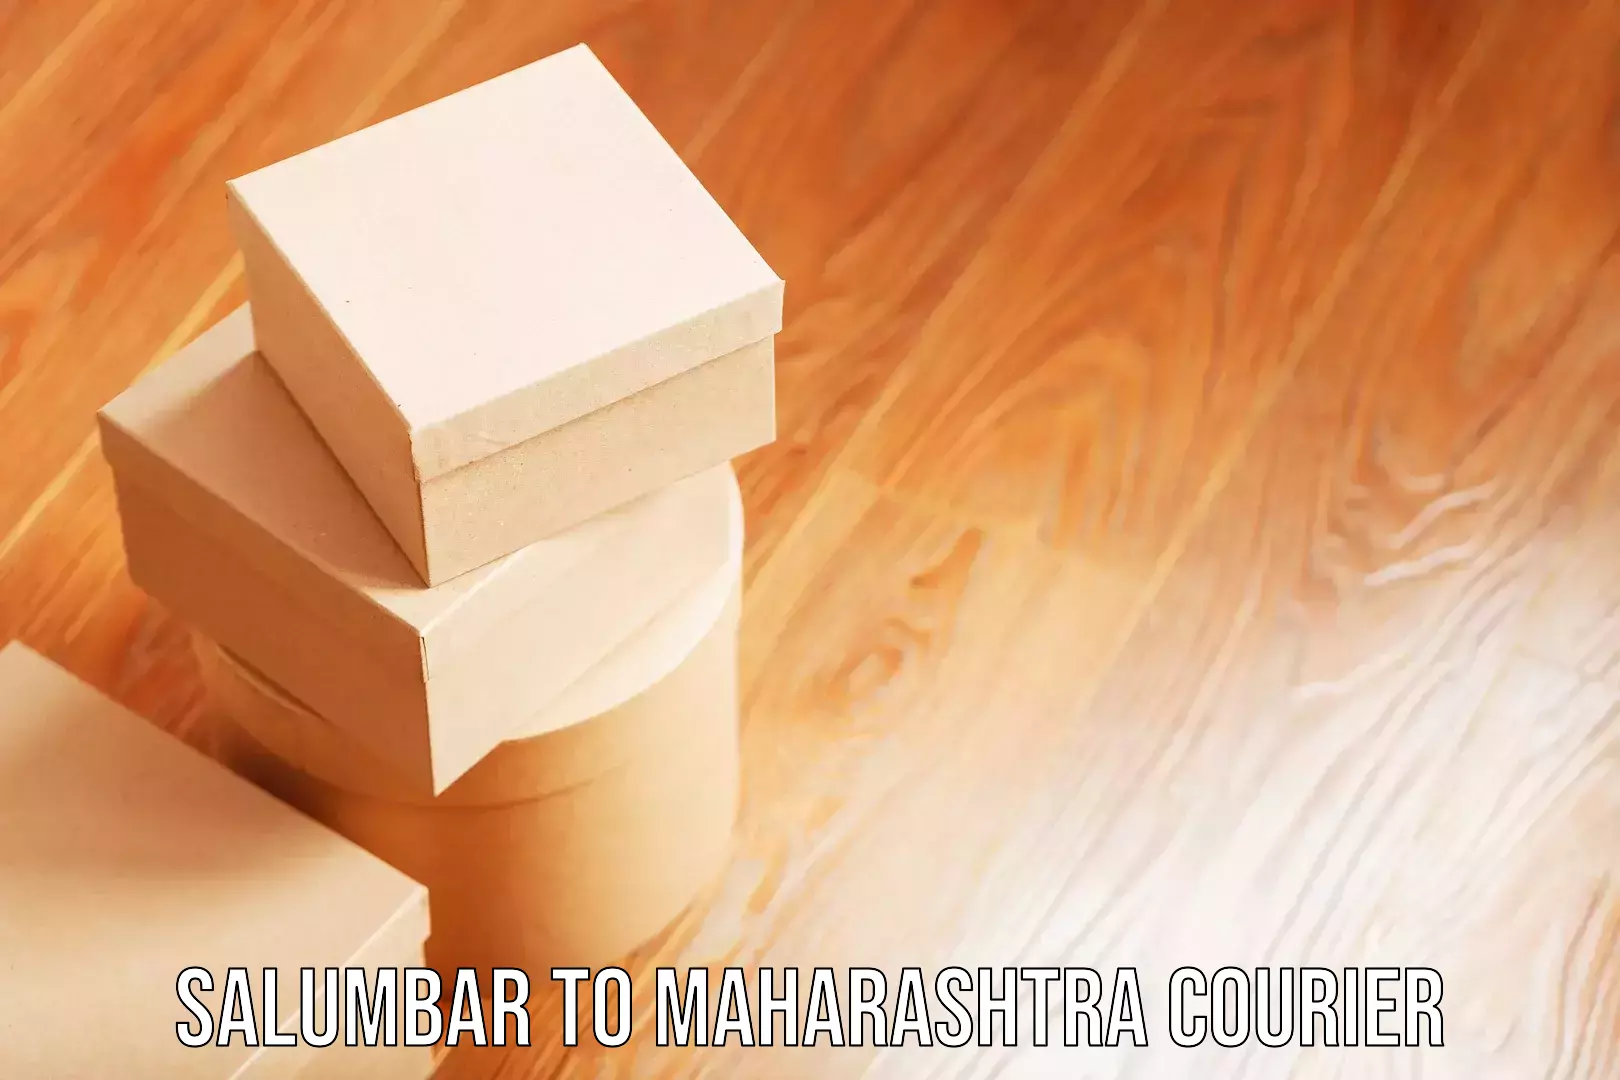 Baggage shipping experts Salumbar to Maharashtra